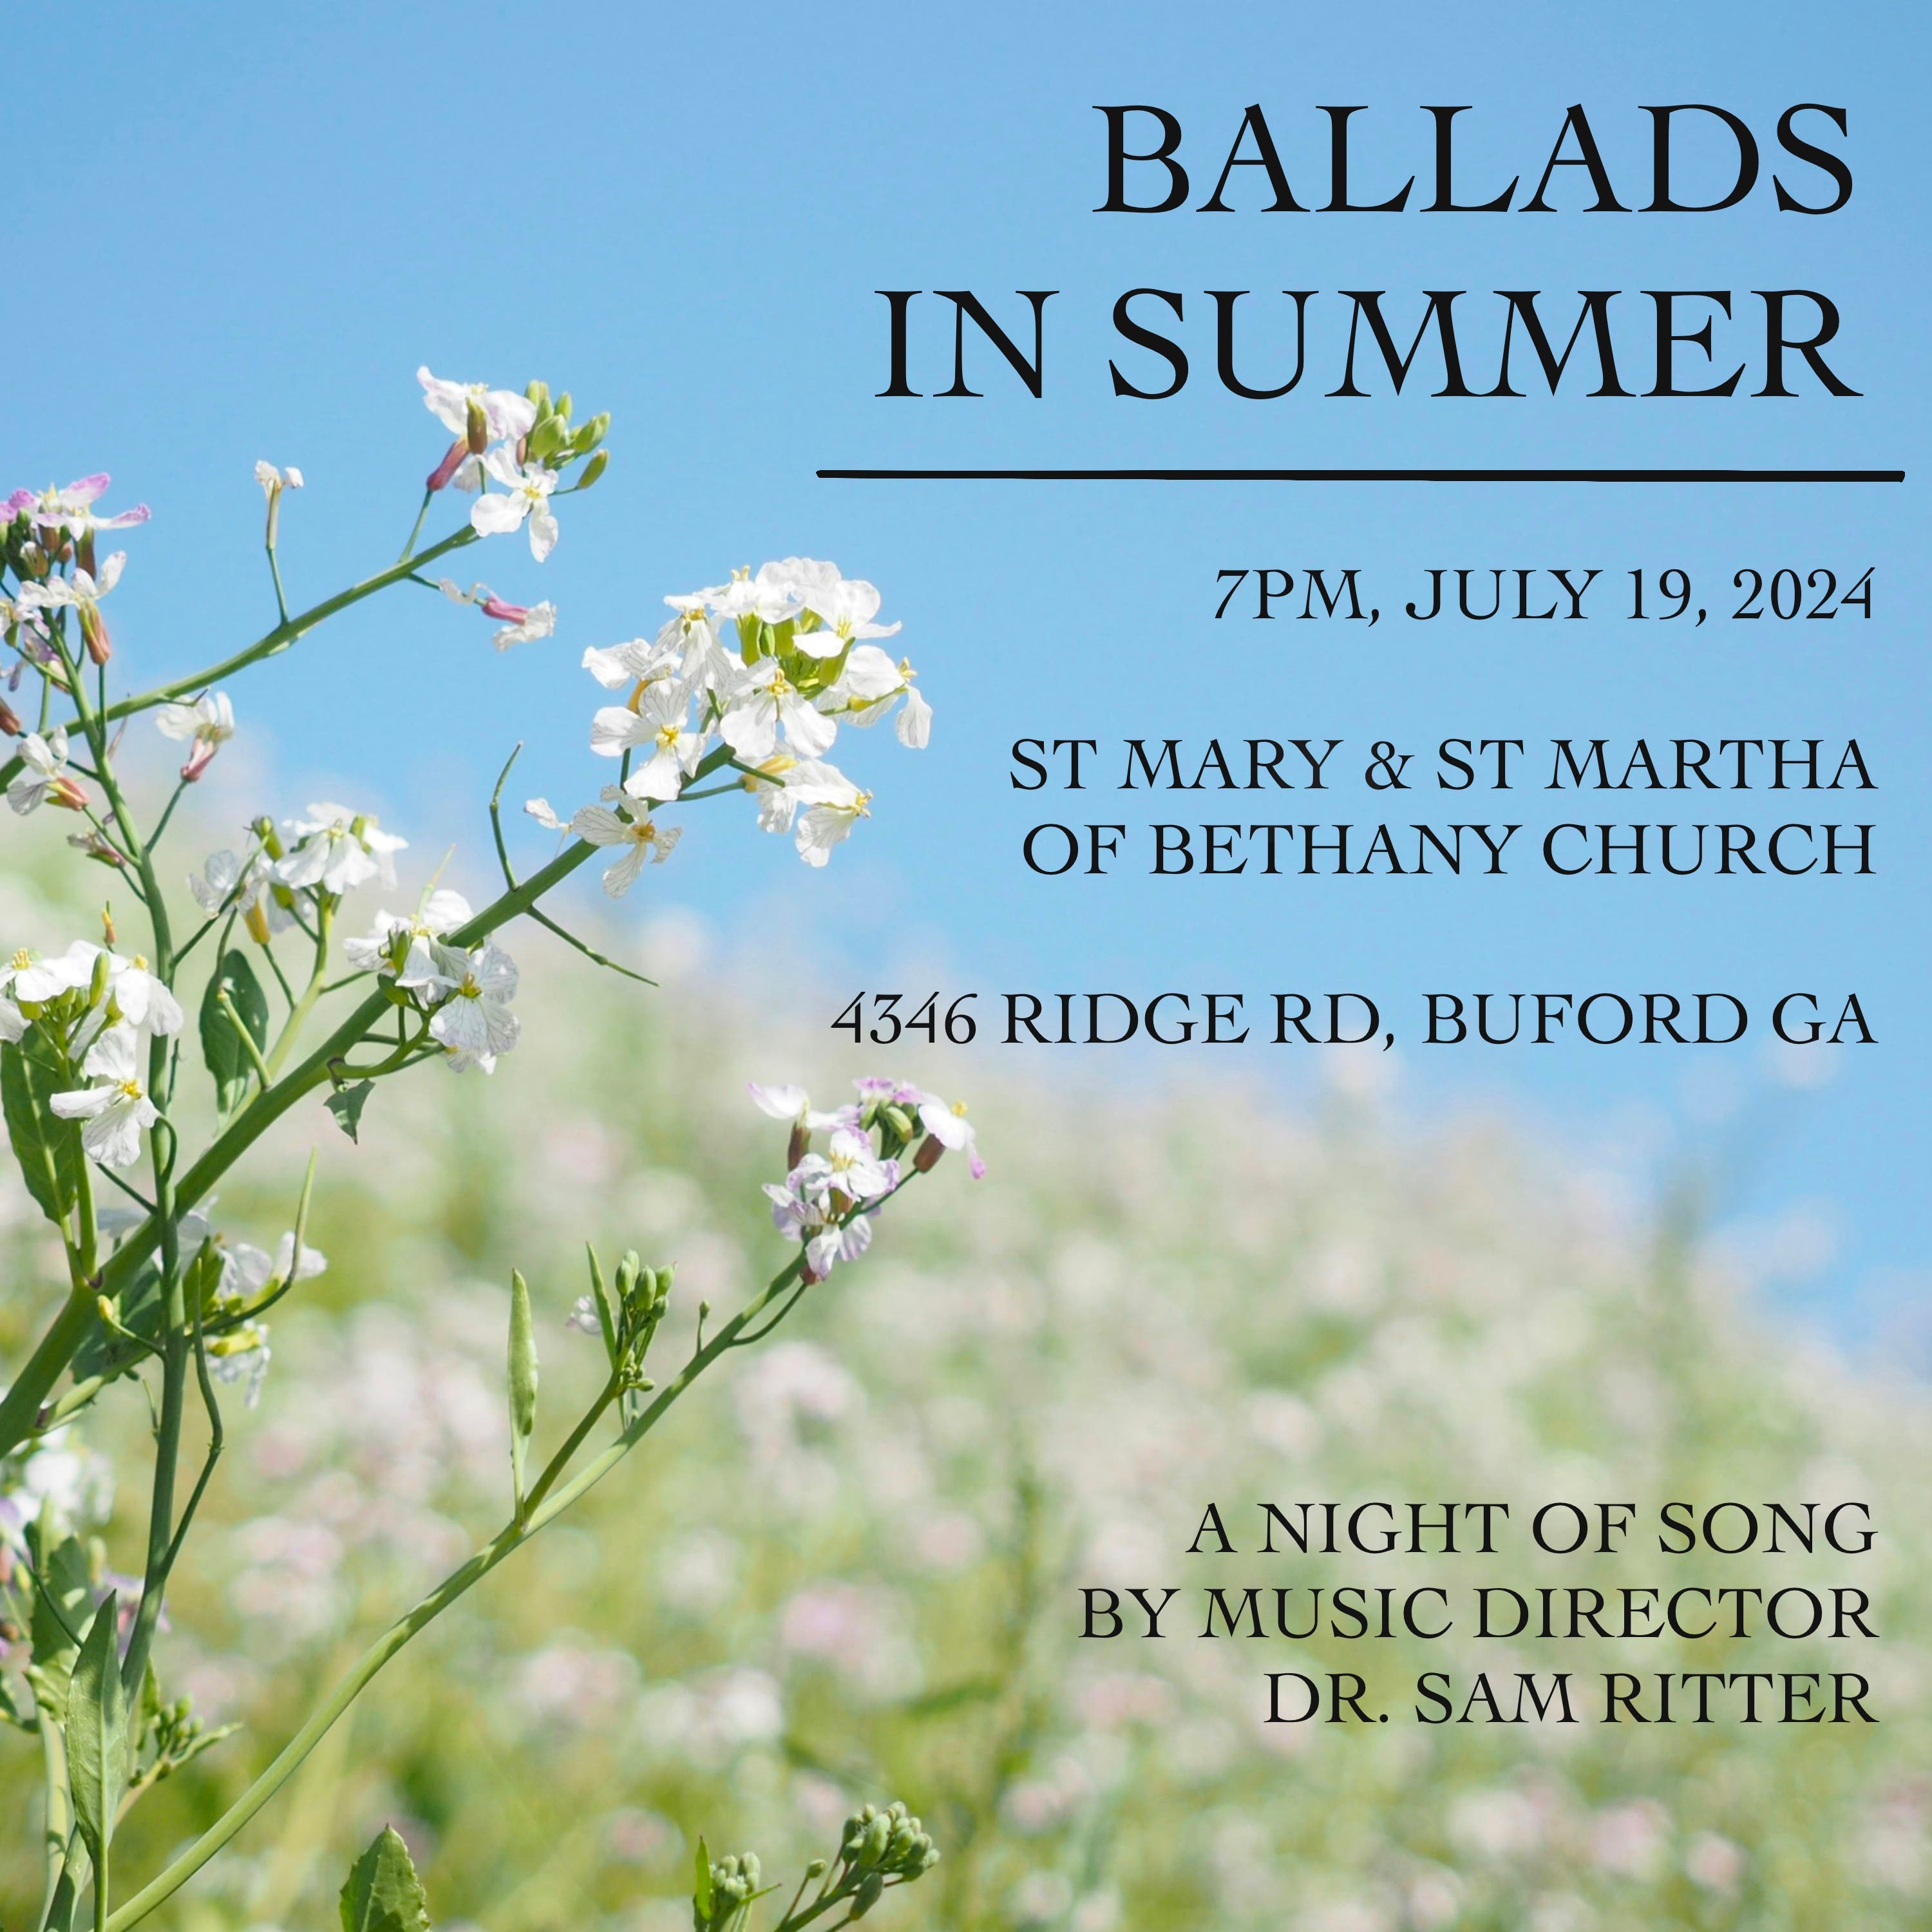 Ballads in Summer - Free Concert